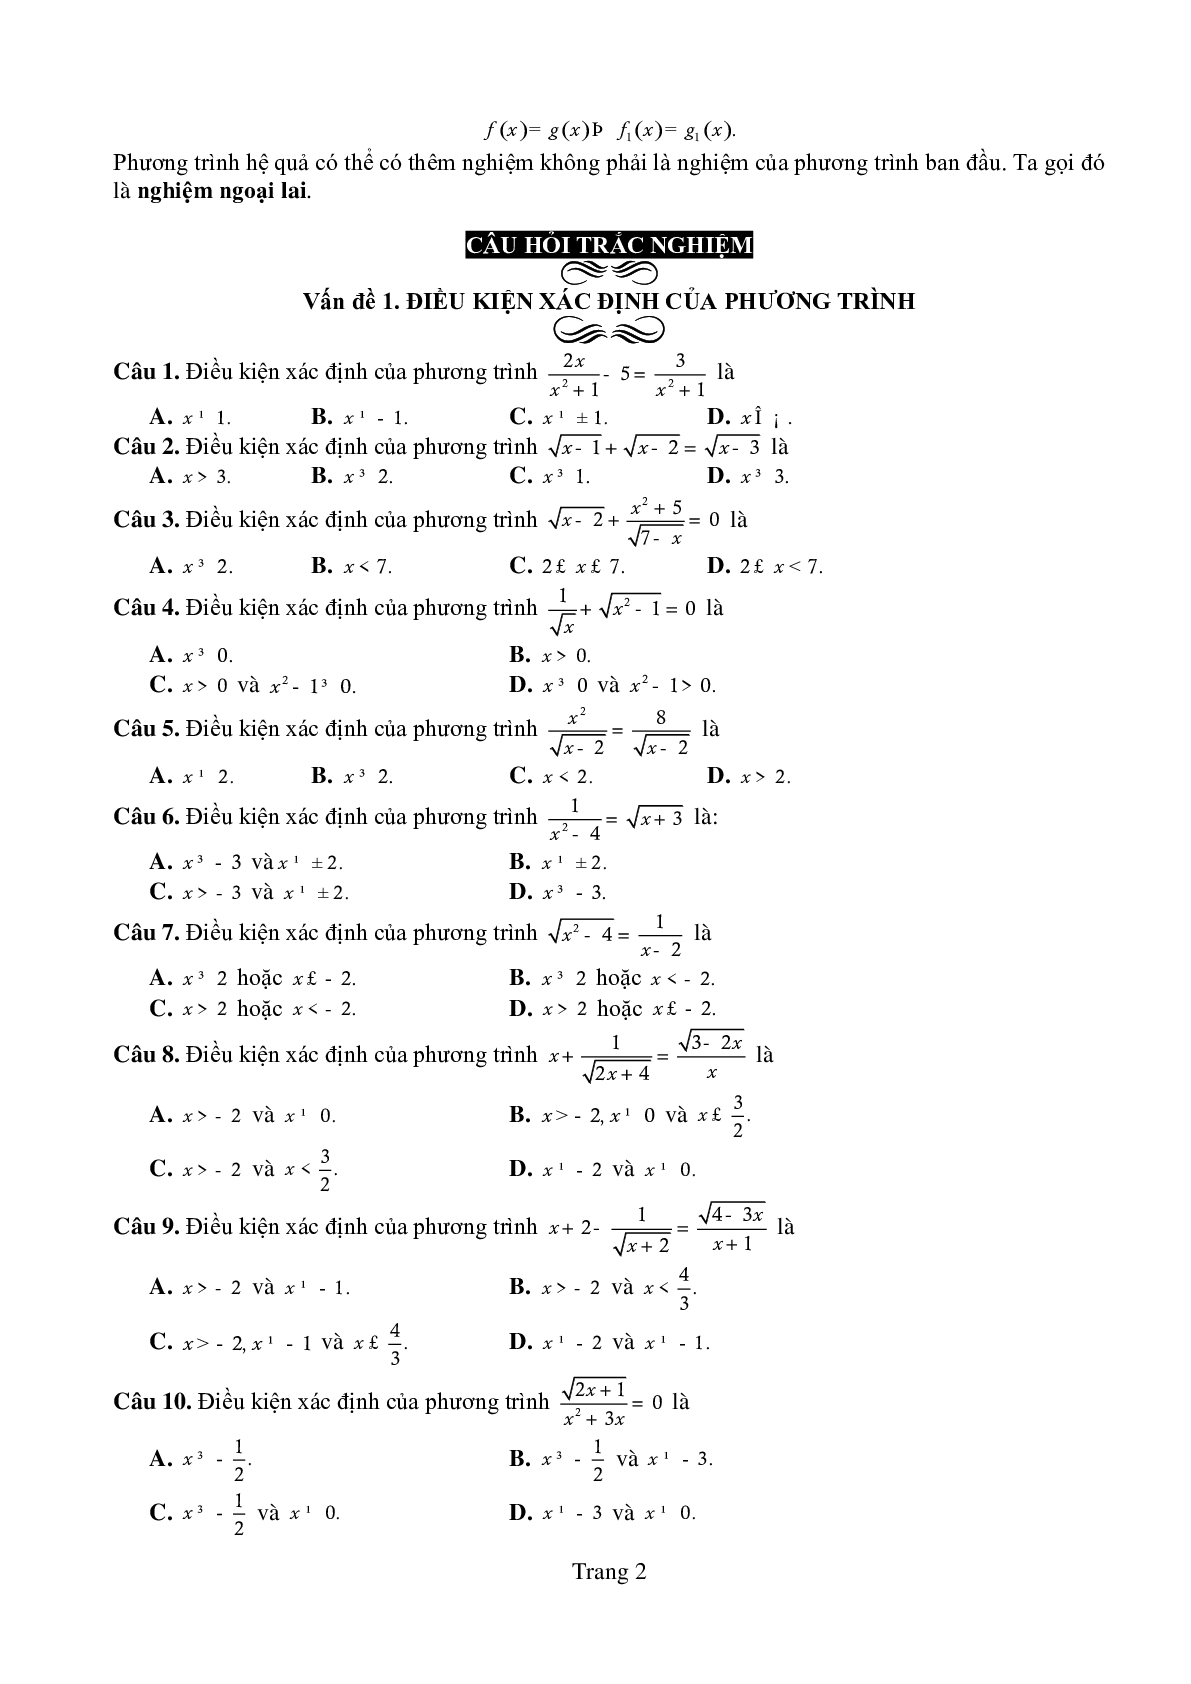 Chuyên đề: Phương trình môn Toán lớp 10 có lời giải chi tiết (trang 2)